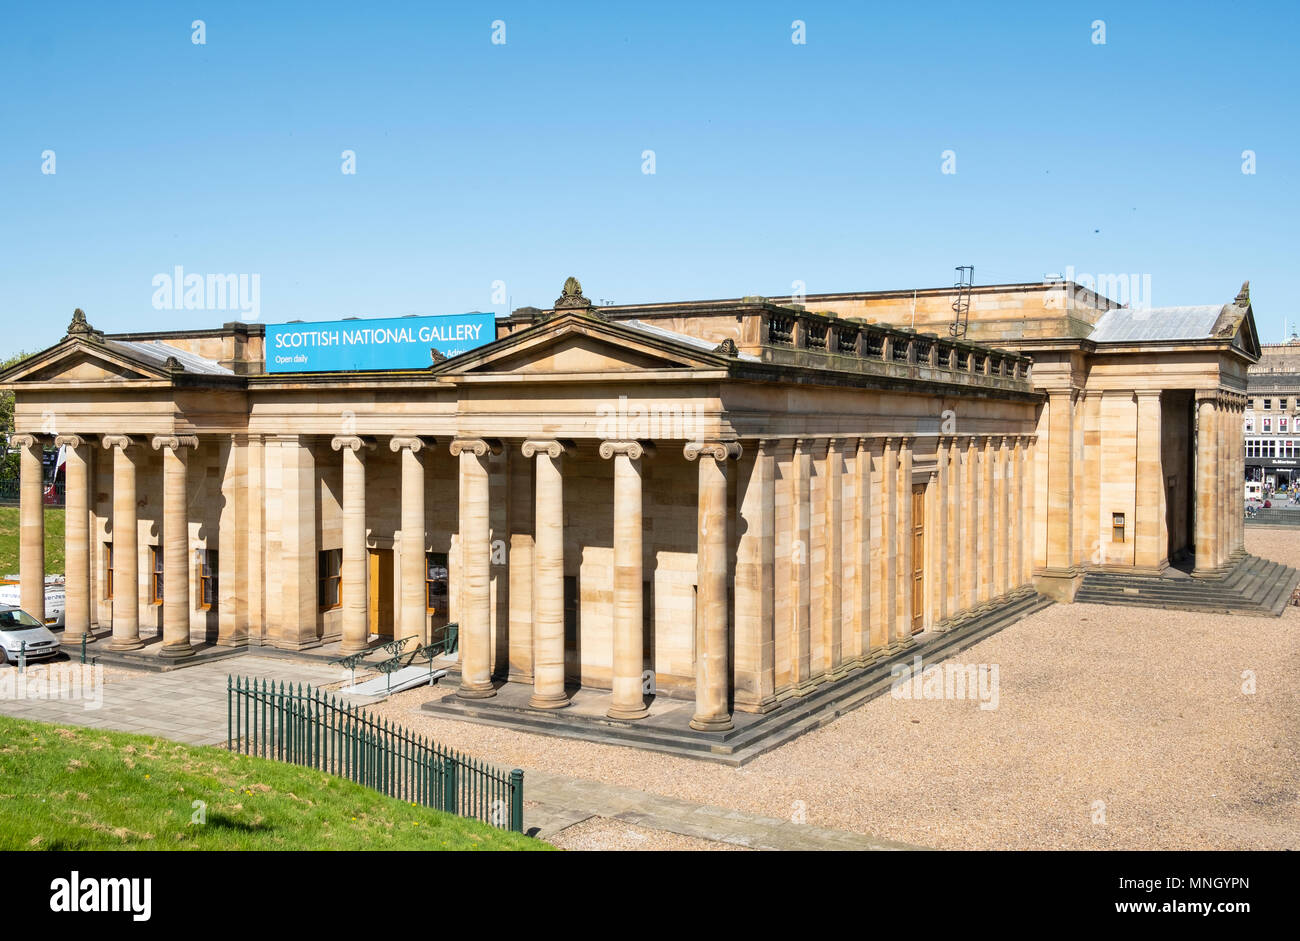 Esterno della Scottish National Gallery, il museo di arte , sul tumulo di Edimburgo, in Scozia, Regno Unito, Gran Bretagna. Foto Stock